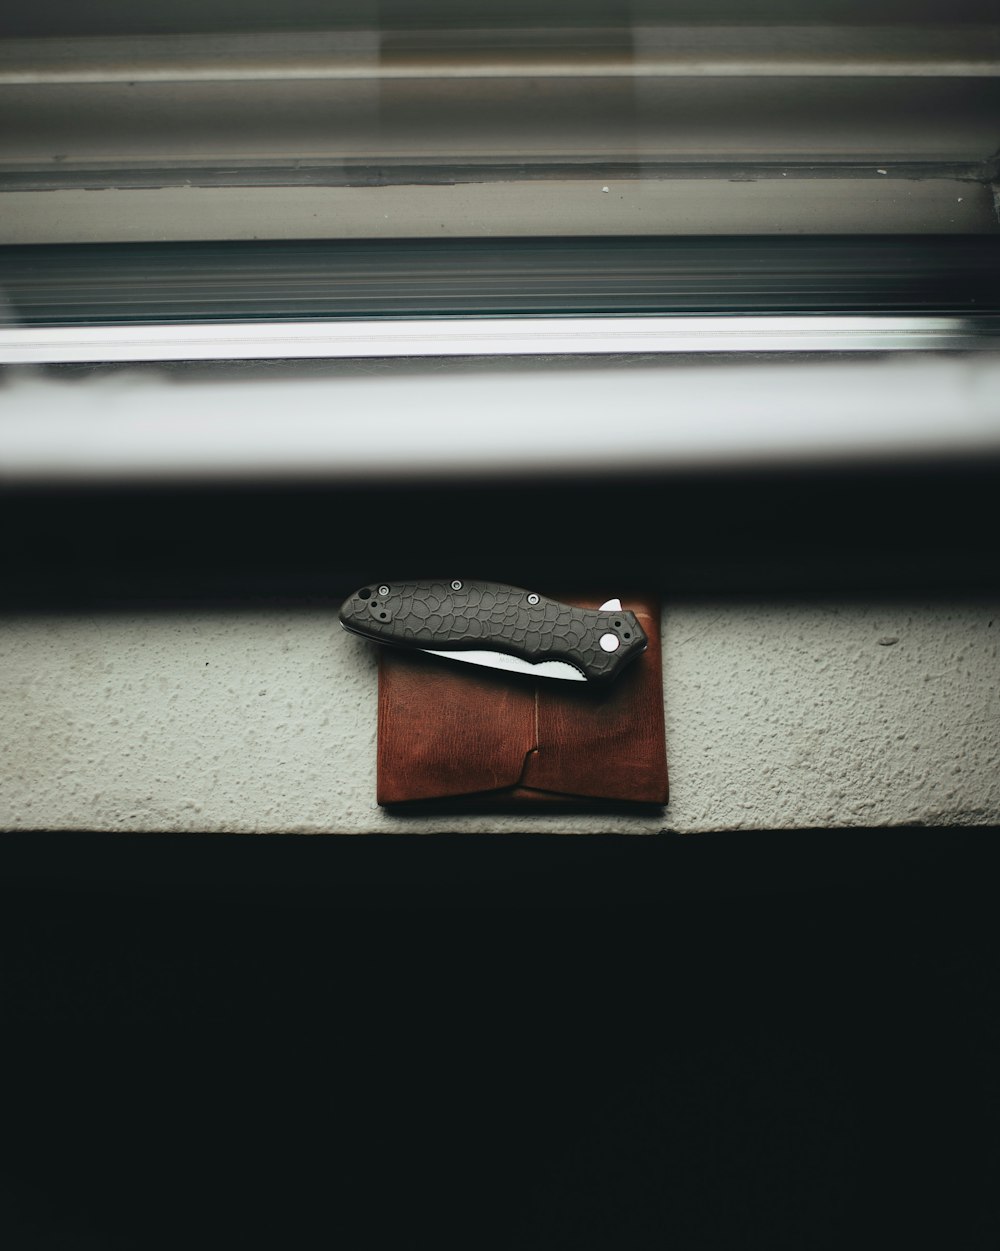 black handled pocketknife on brown leather case